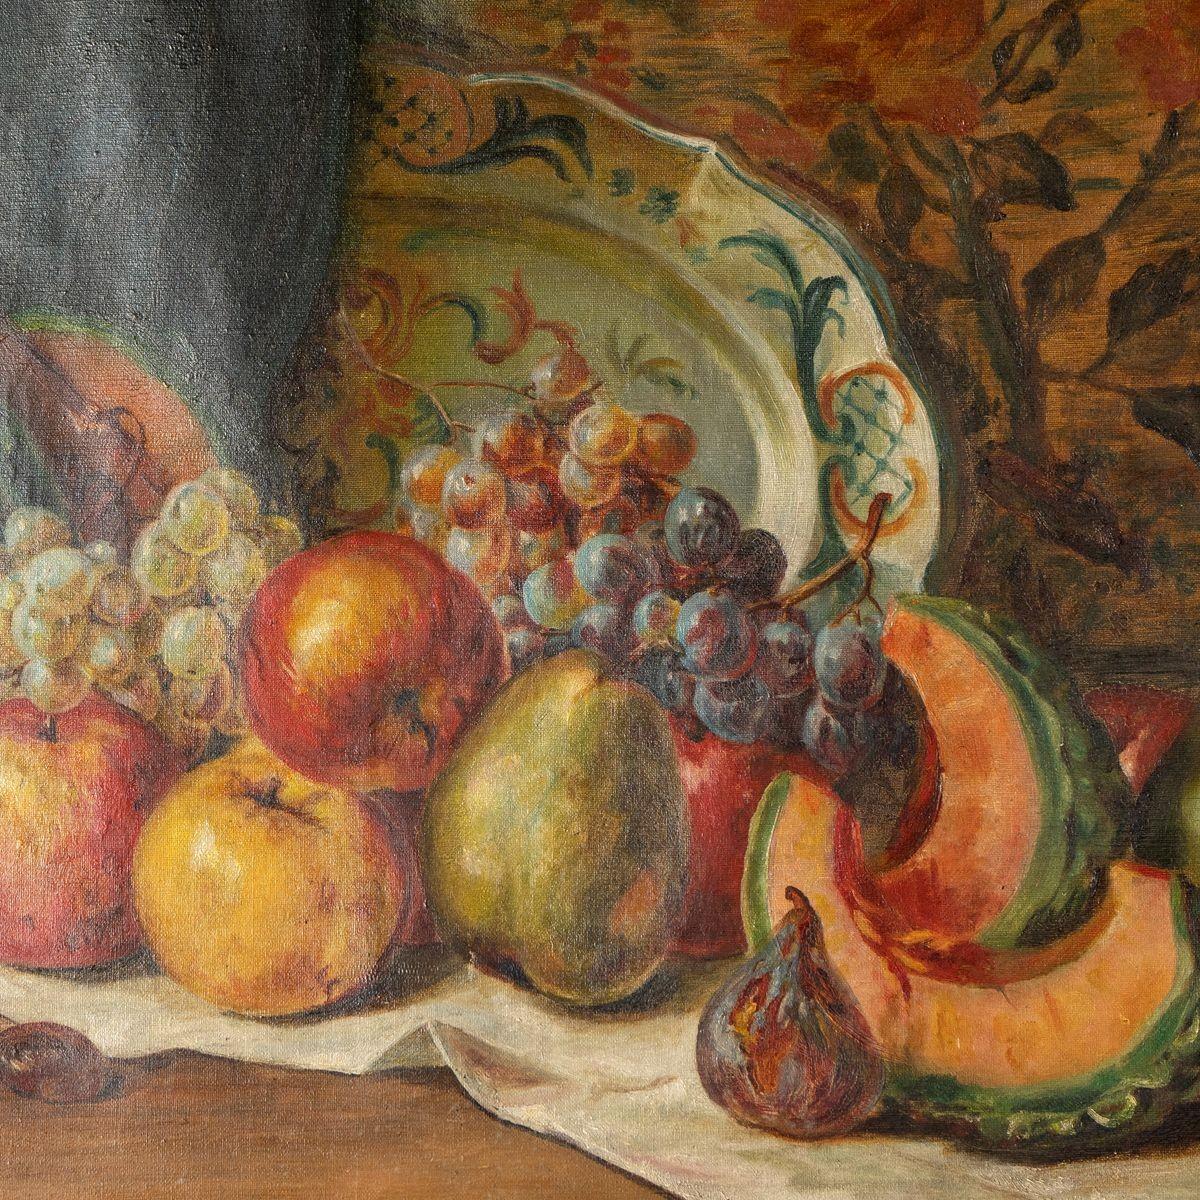 Antike Original Öl auf Leinwand Gemälde

Es zeigt eine Fülle von Früchten auf einem Küchentisch, darunter Melonen, Granatäpfel und Feigen, zusammen mit einem wunderschönen antiken Ladegerät, einem Obstmesser und dem obligatorischen Glas